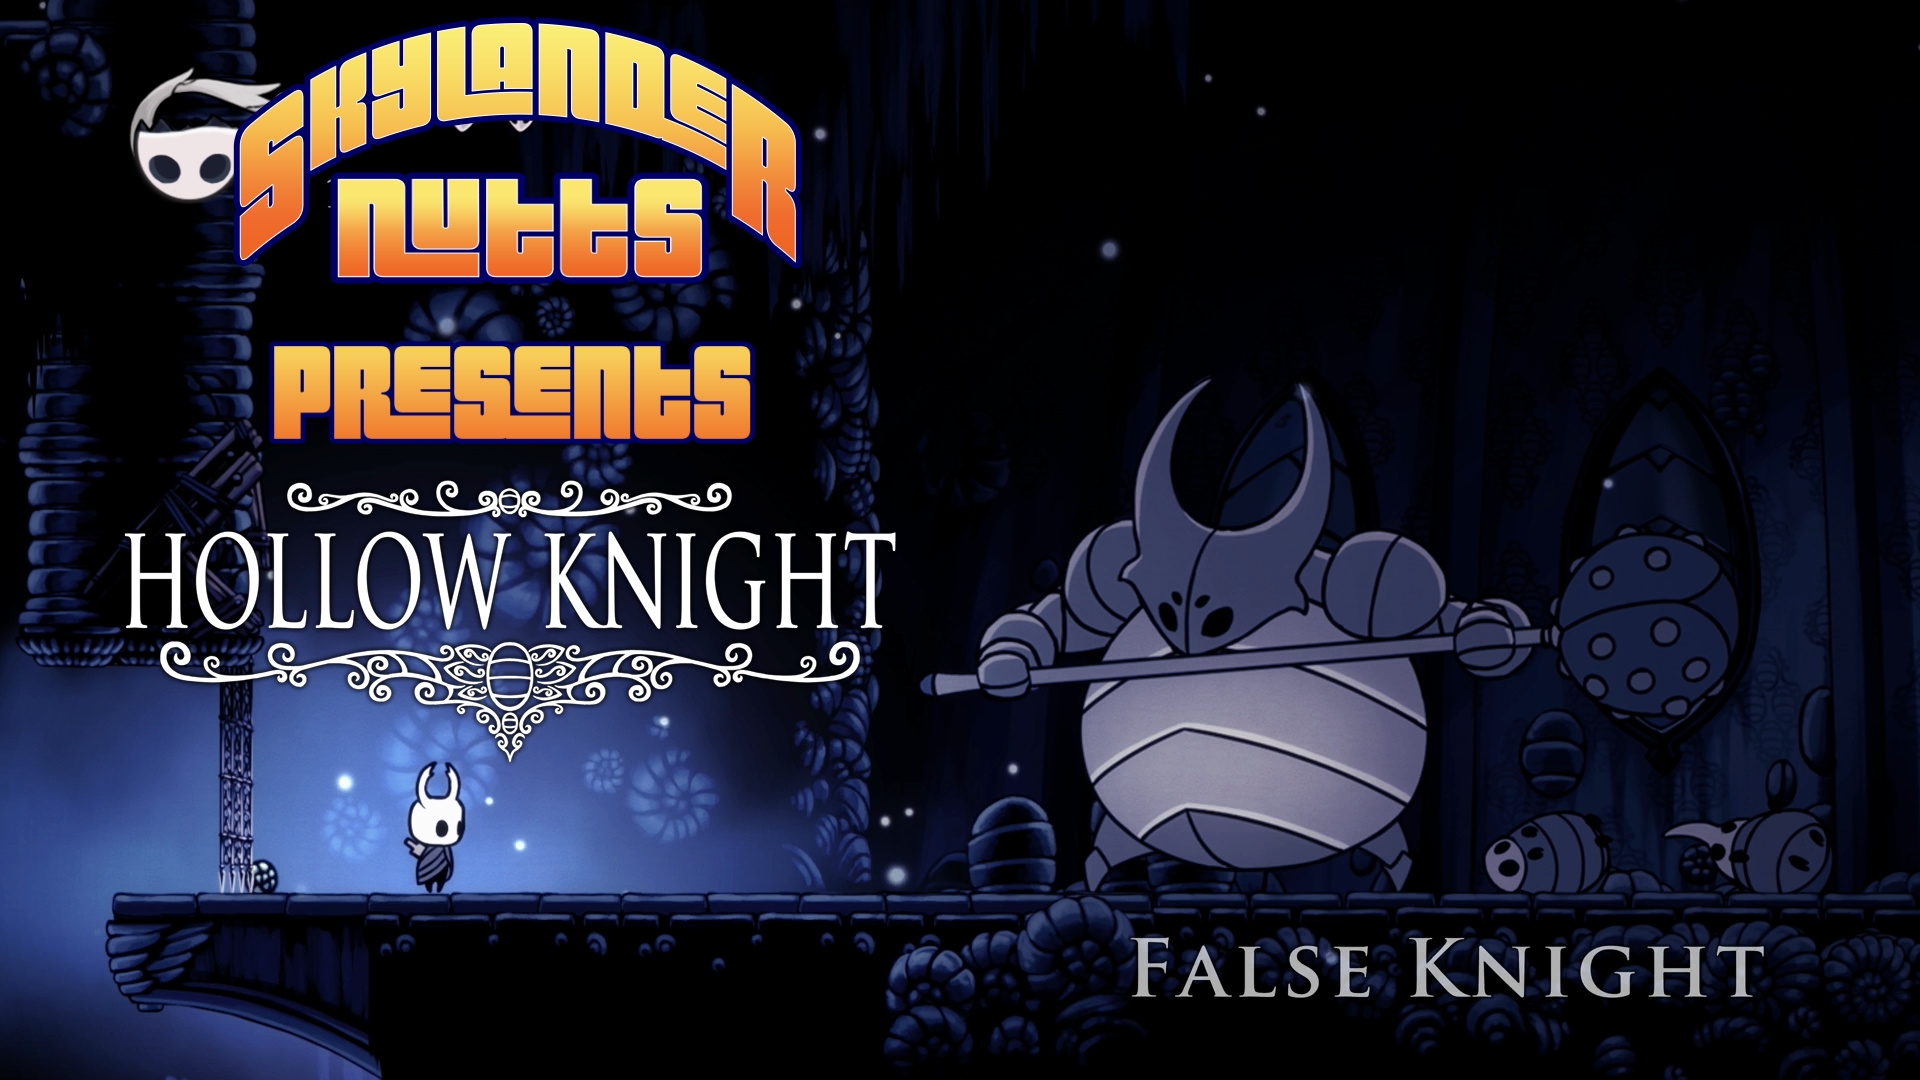 SkylanderNutts Presents Hollow Knight